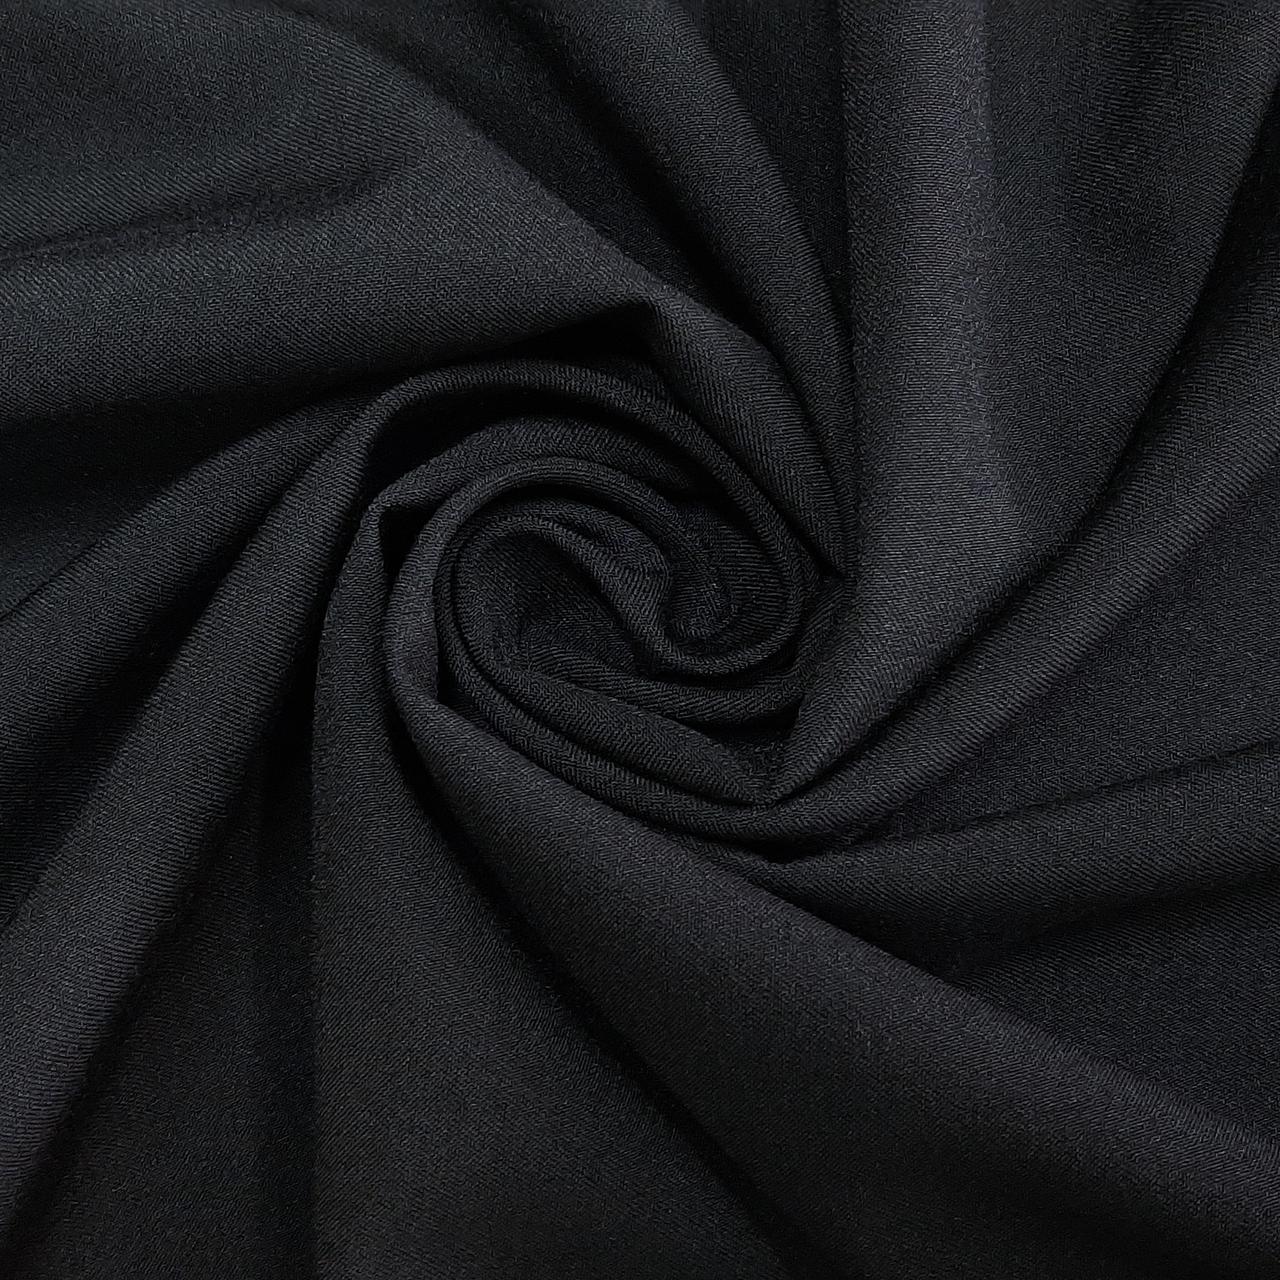 Ткань костюмная гальяно цвет черный